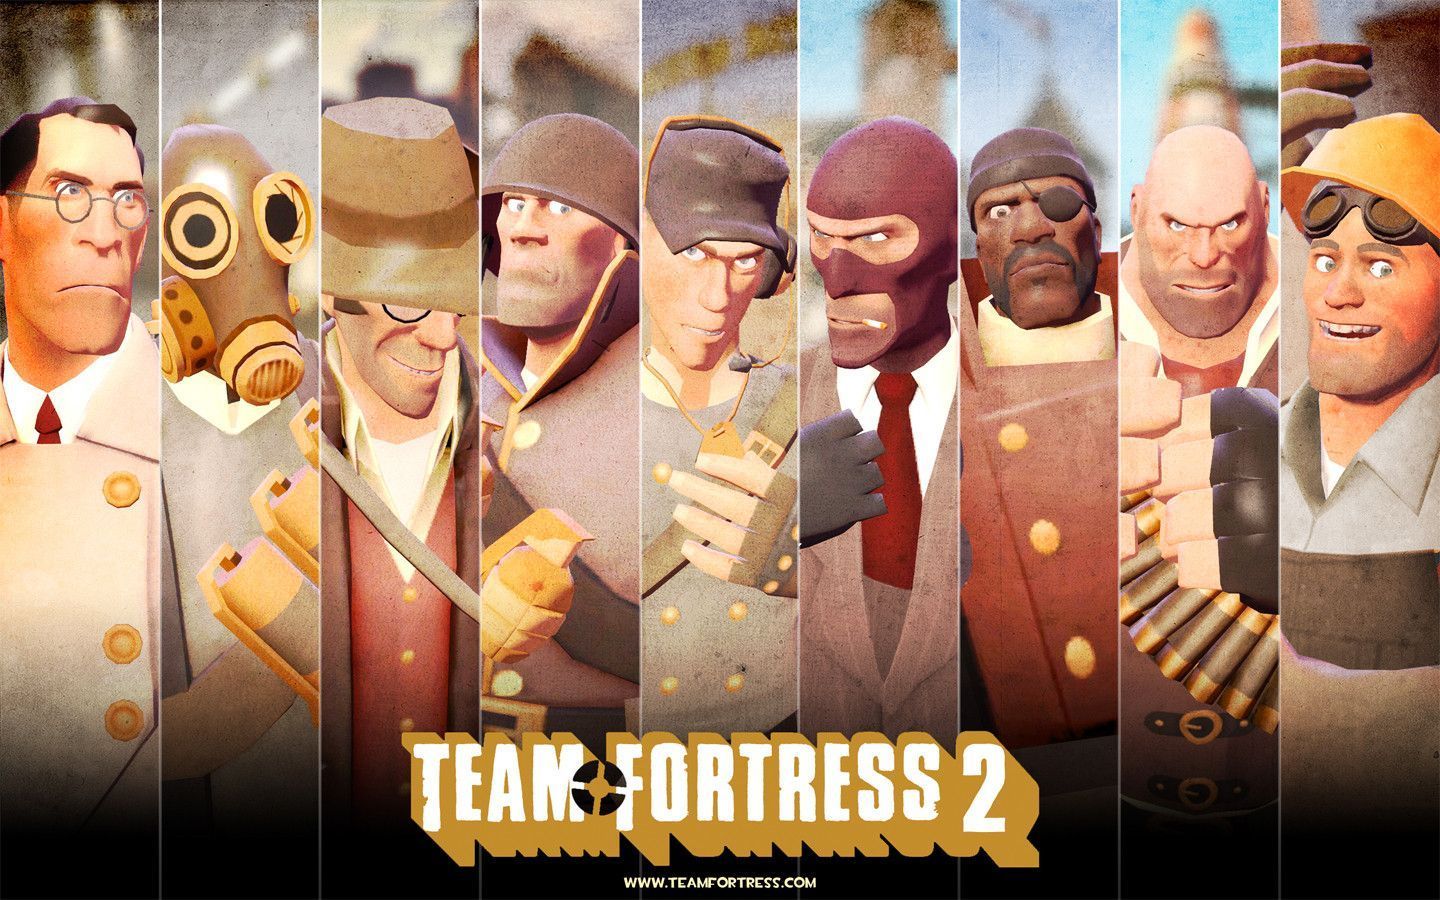 Team Fortress 2 Wallpaper | 1440x900 | ID:24836